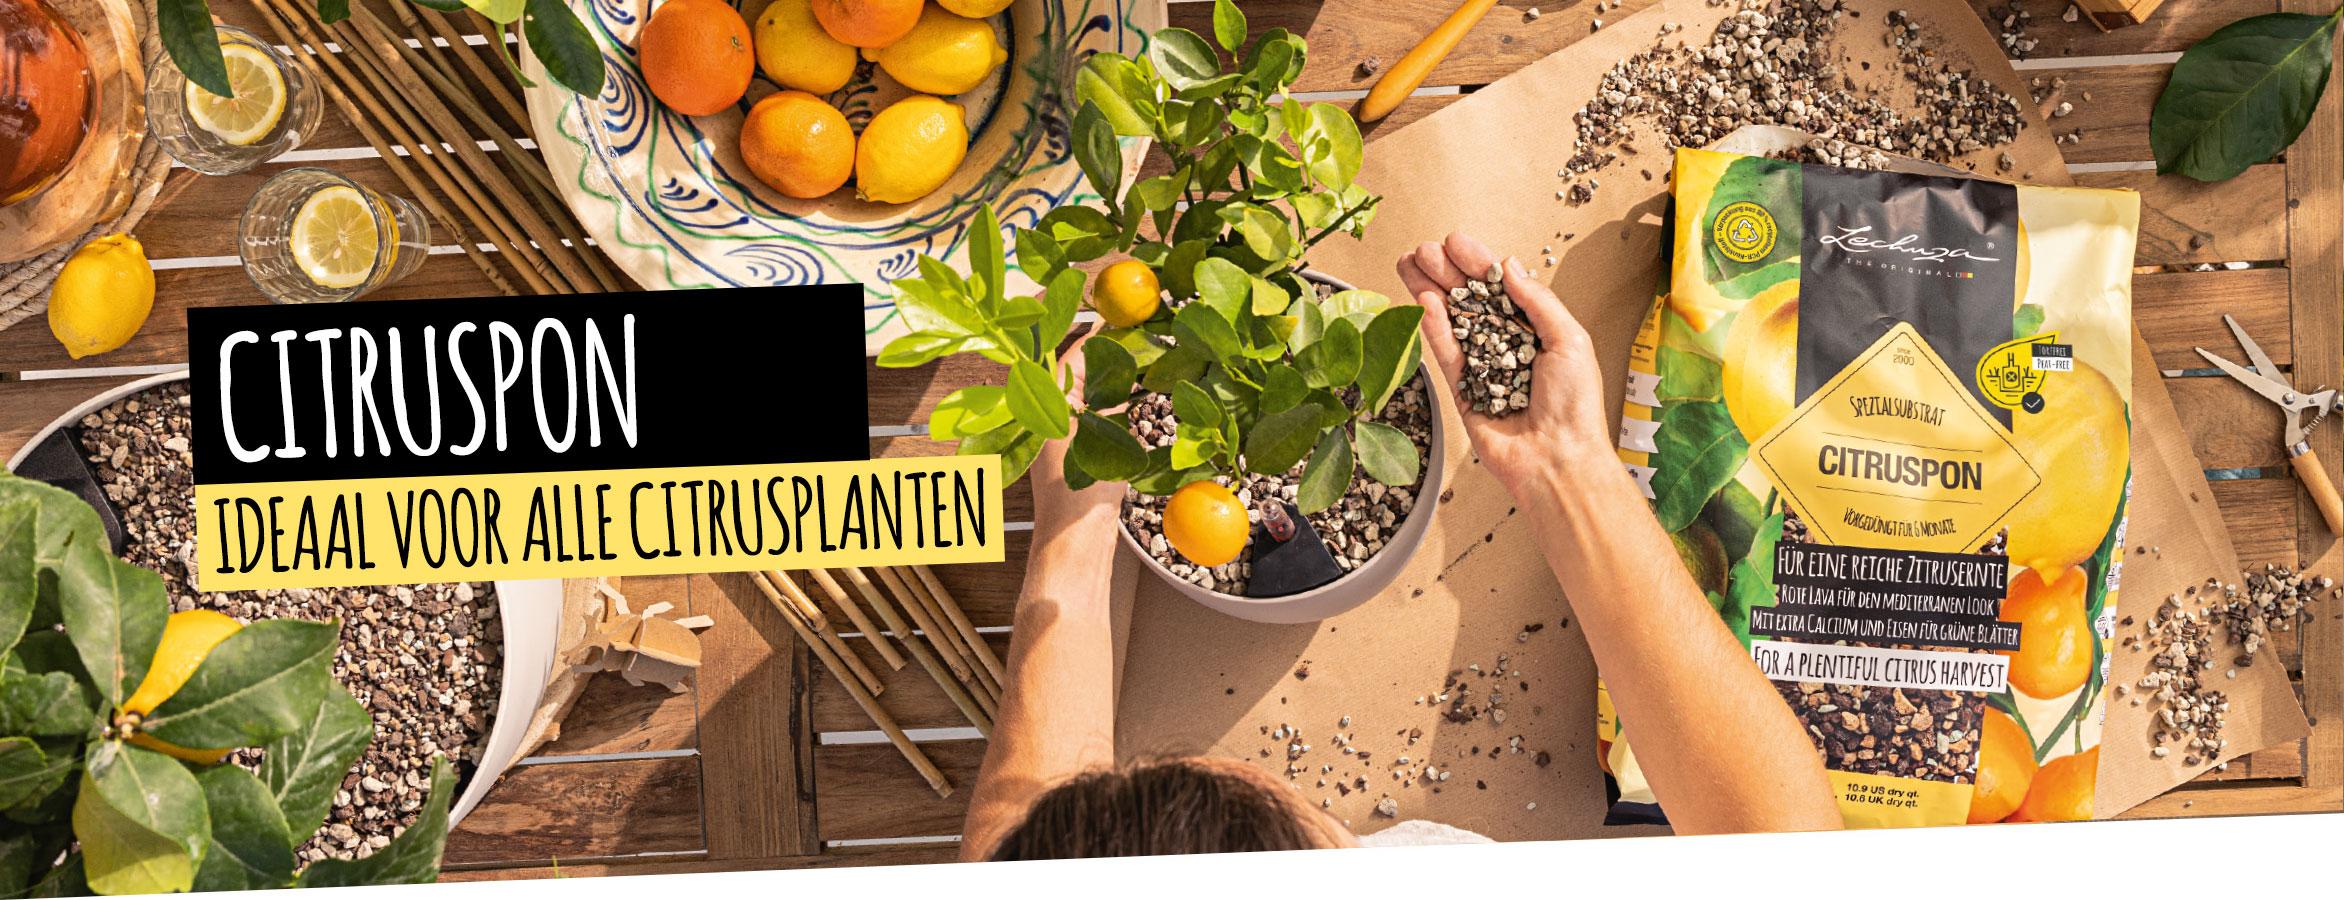 CITRUSPON: Ideaal voor alle citrusplanten